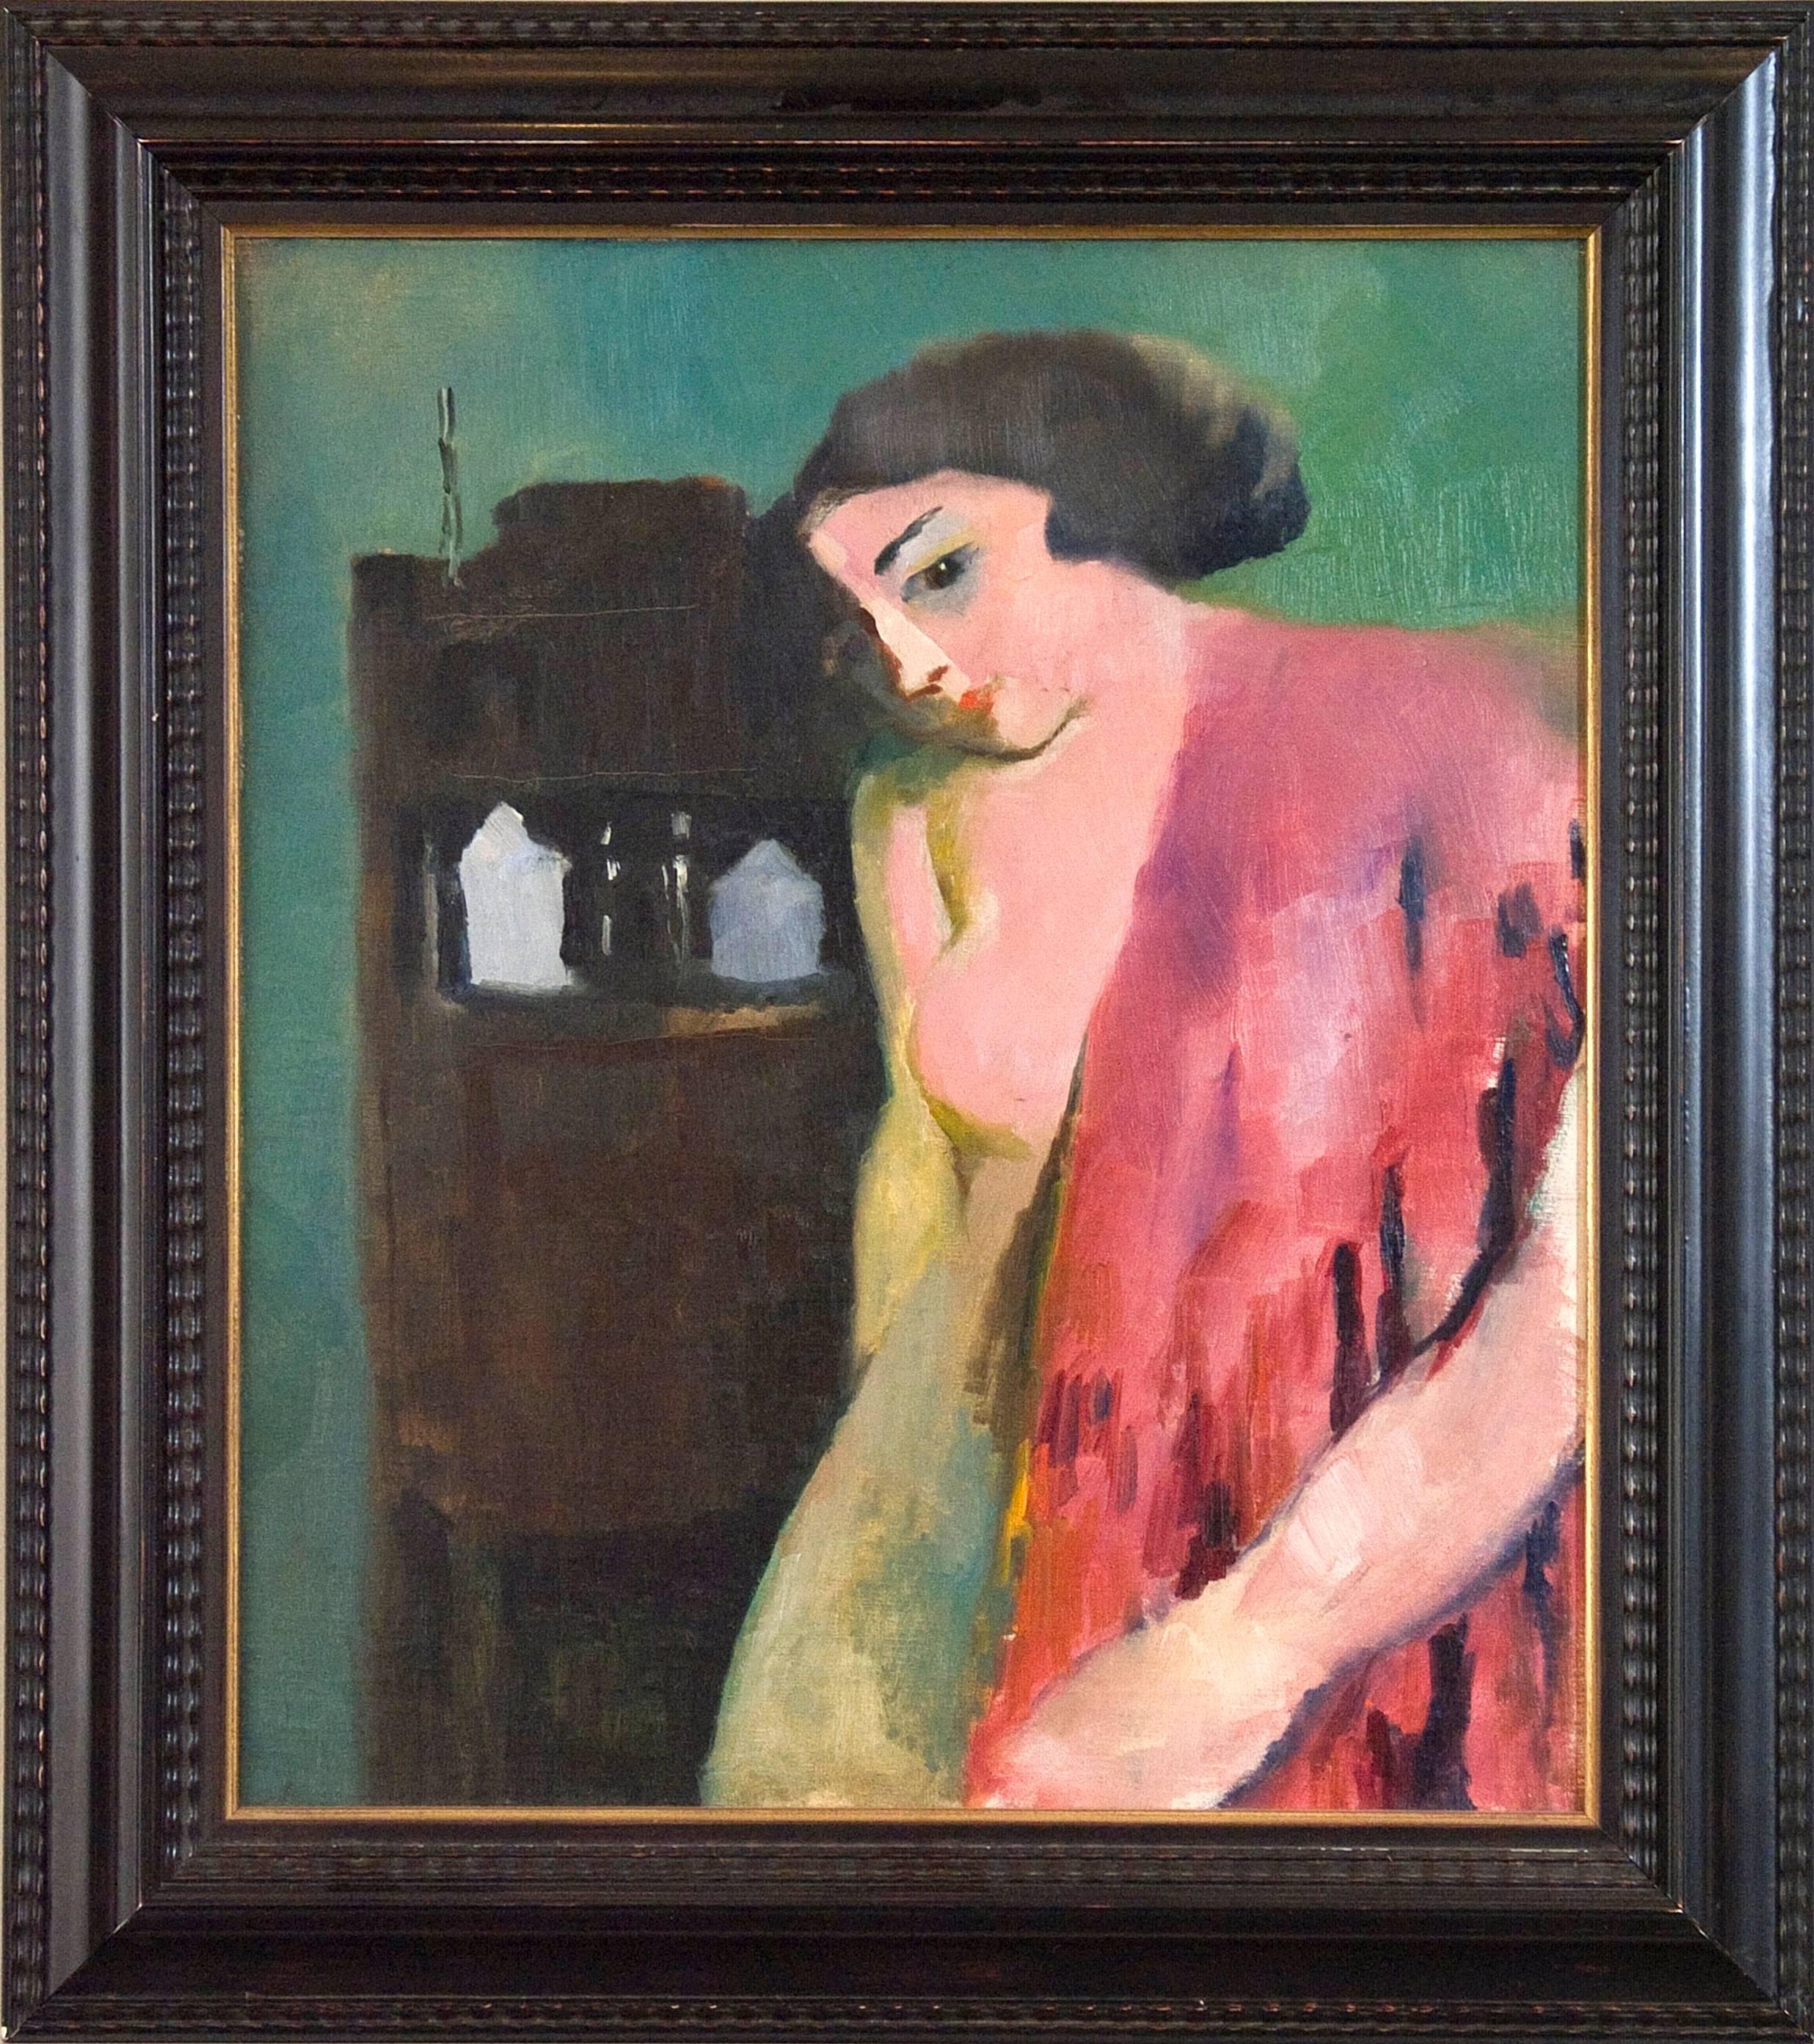 Der rote Schal,  – Painting von Arthur Beecher Carles